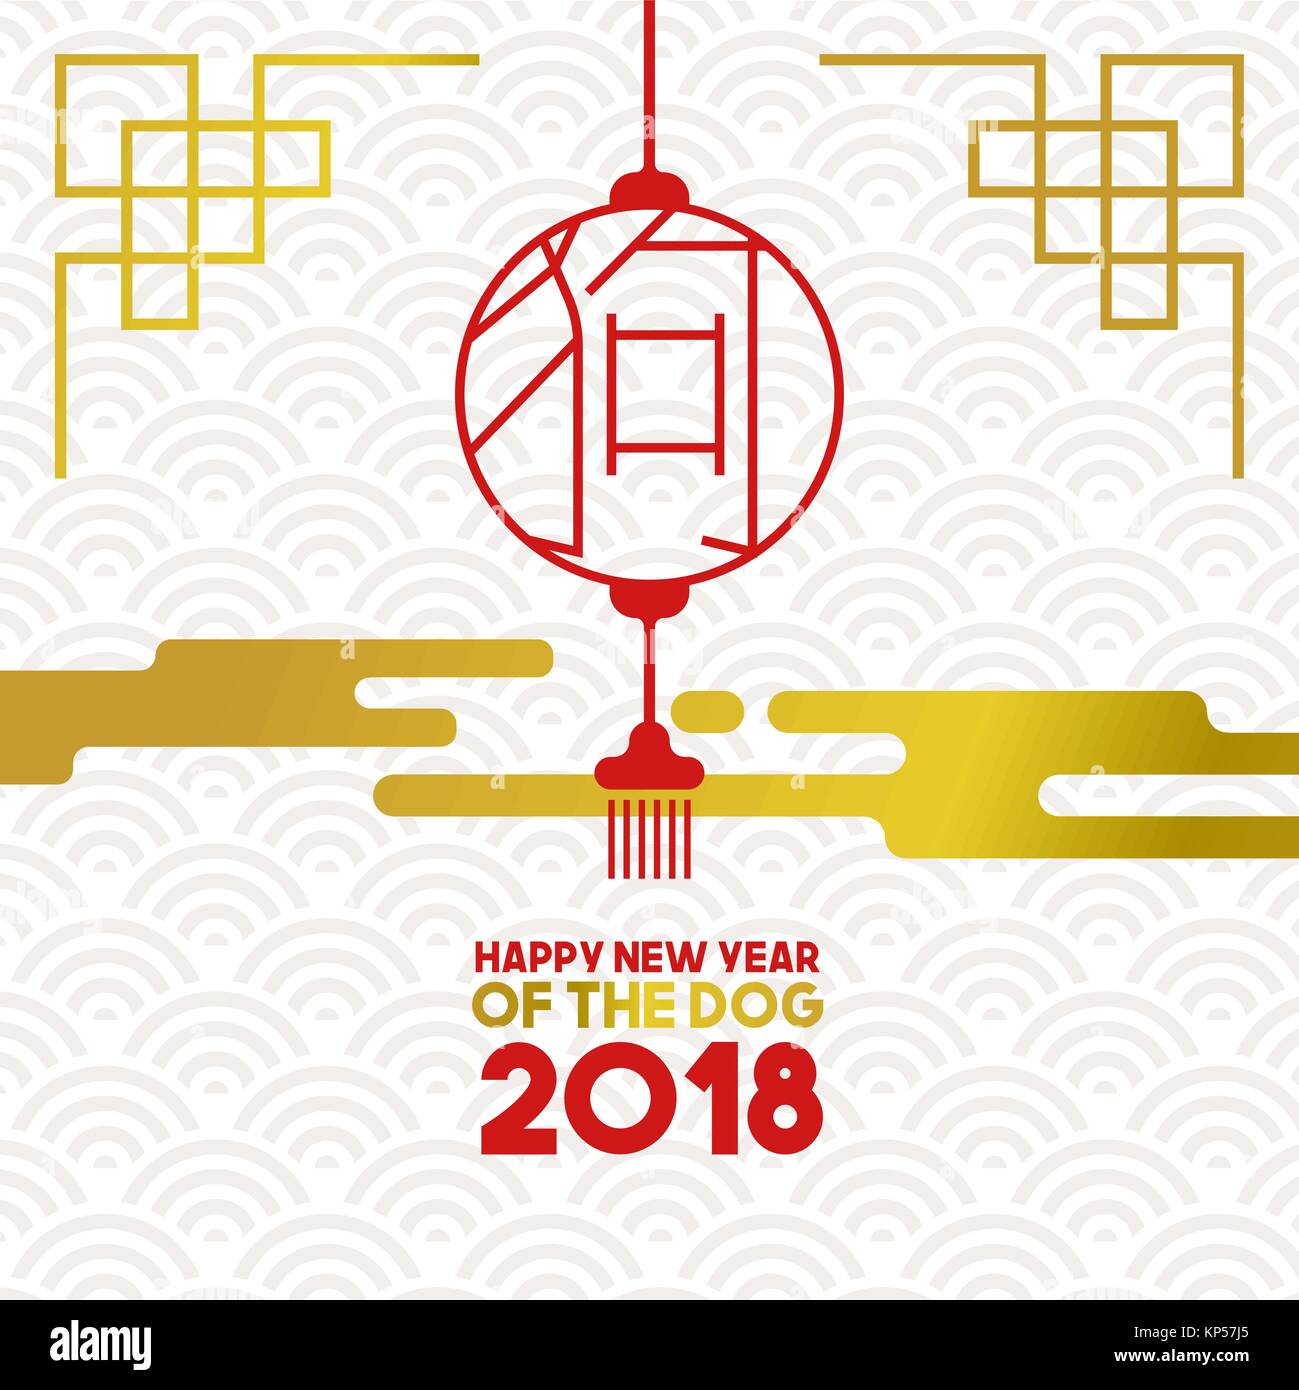 Le nouvel an chinois 2018 illustration avec de l'or et décor asiatique calligraphie traditionnelle qui signifie chien à l'intérieur lanterne de papier. Vecteur EPS10. Illustration de Vecteur